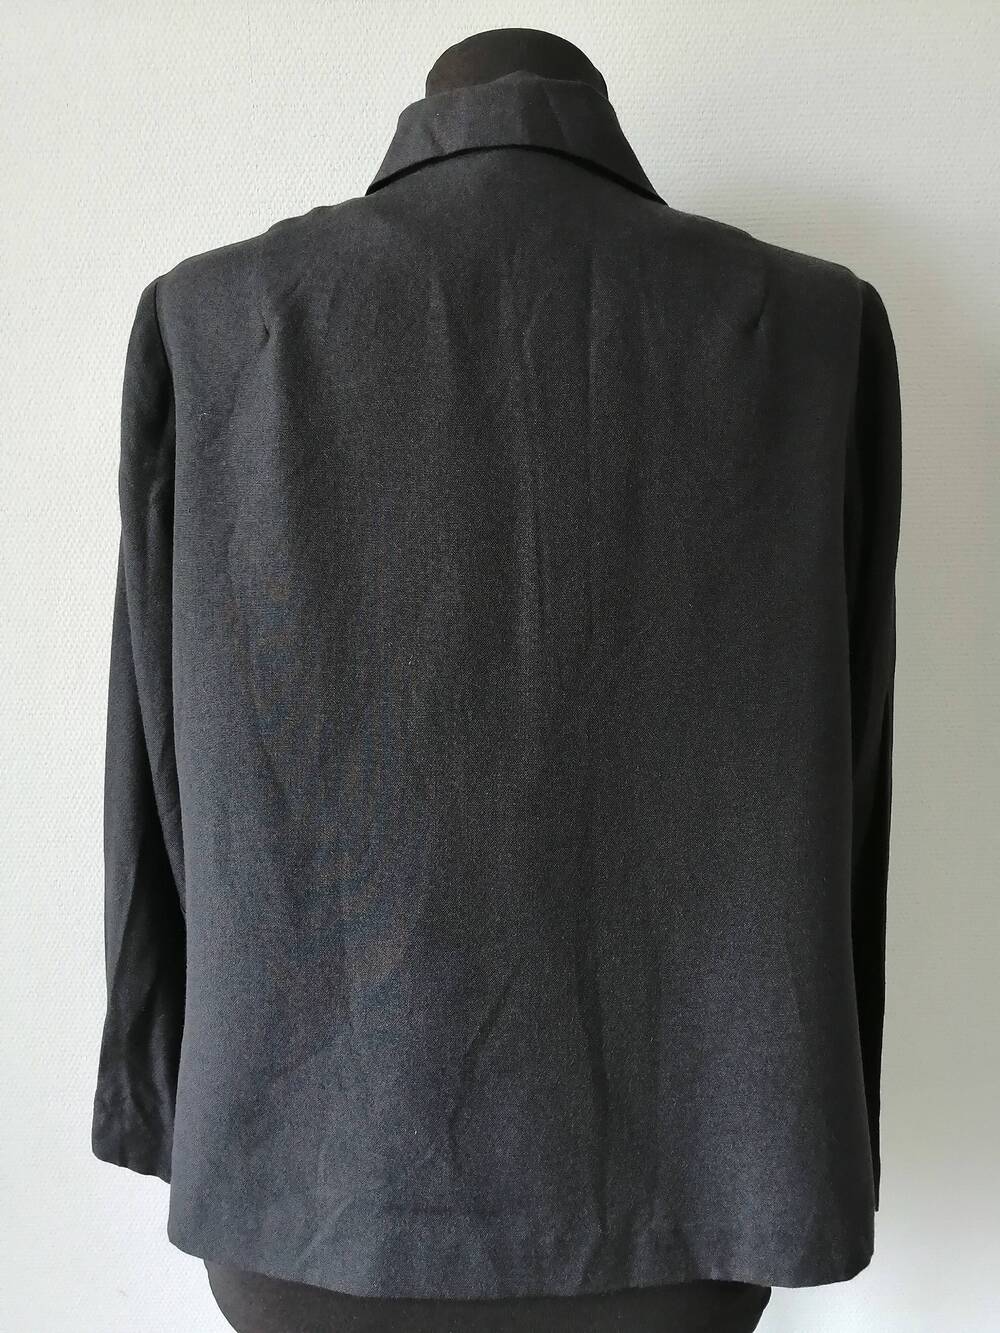 Пиджак женский из шерстяной ткани черного цвета